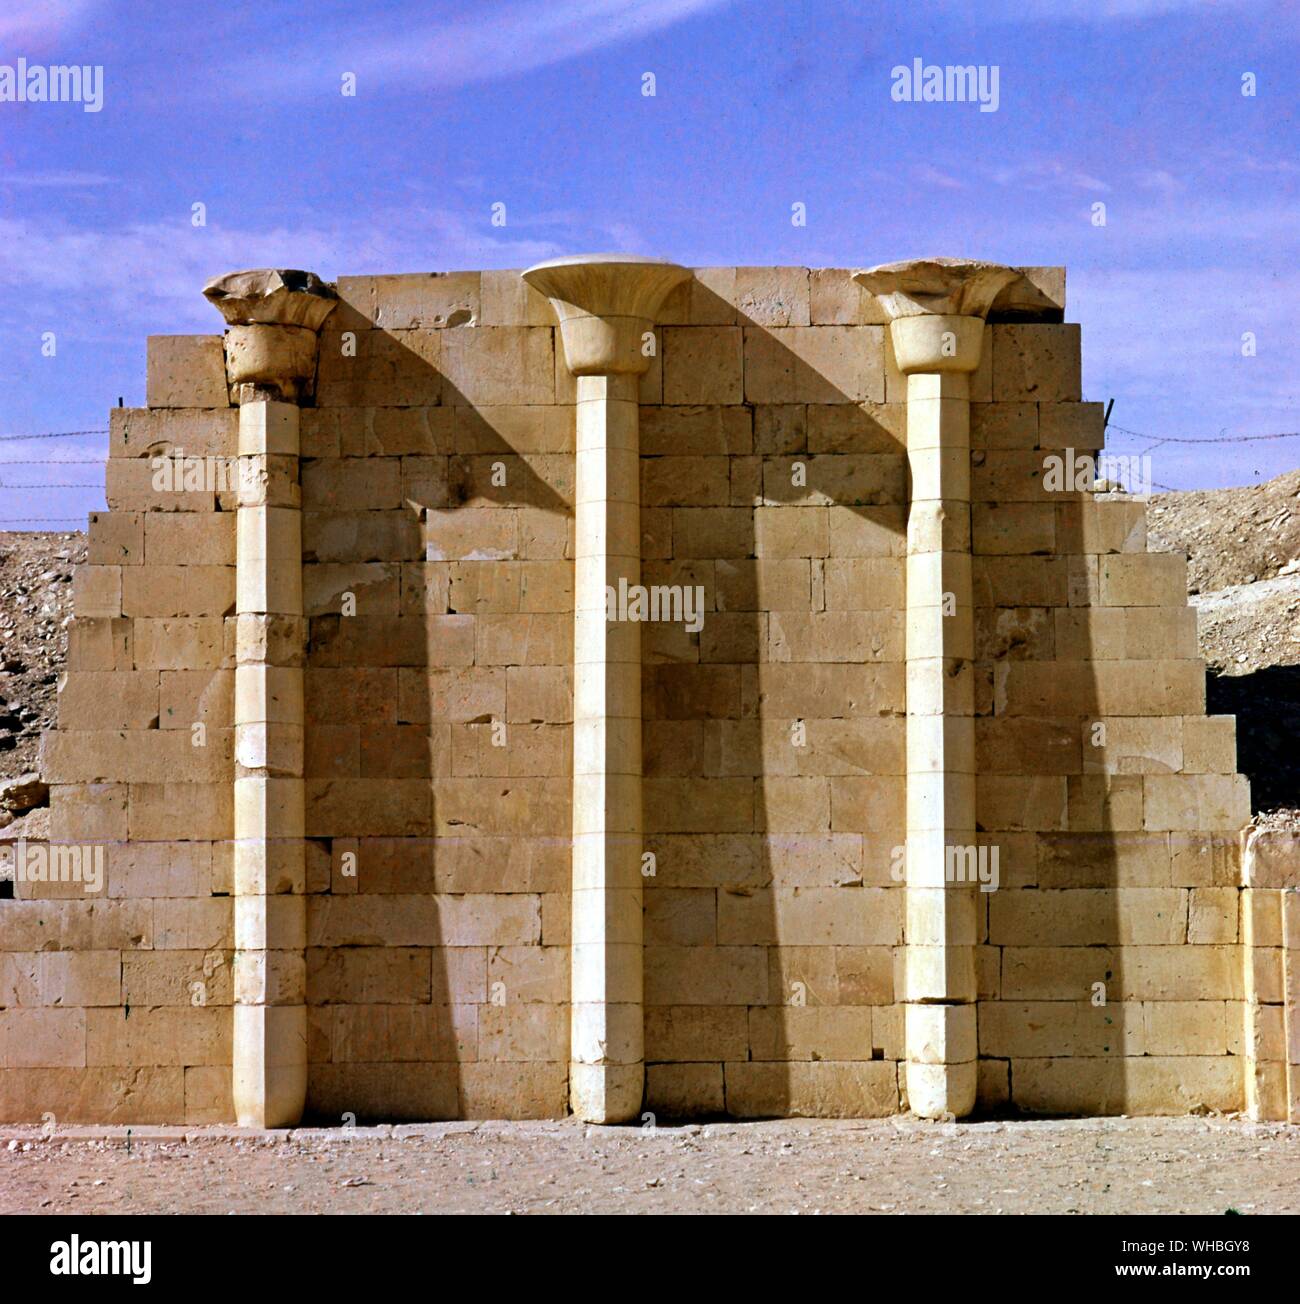 Saqqara - papiro - columnas - Saqqara o Sakkara, Saqqarah es un vasto, antiguo cementerio en Egipto, con el paso permanente más antigua del mundo la pirámide (31.216381 29.871264° N° E). Se encuentra a unos 30 km al sur de El Cairo moderno-día y cubre un área de alrededor de 7 km por 1,5 km.. Foto de stock